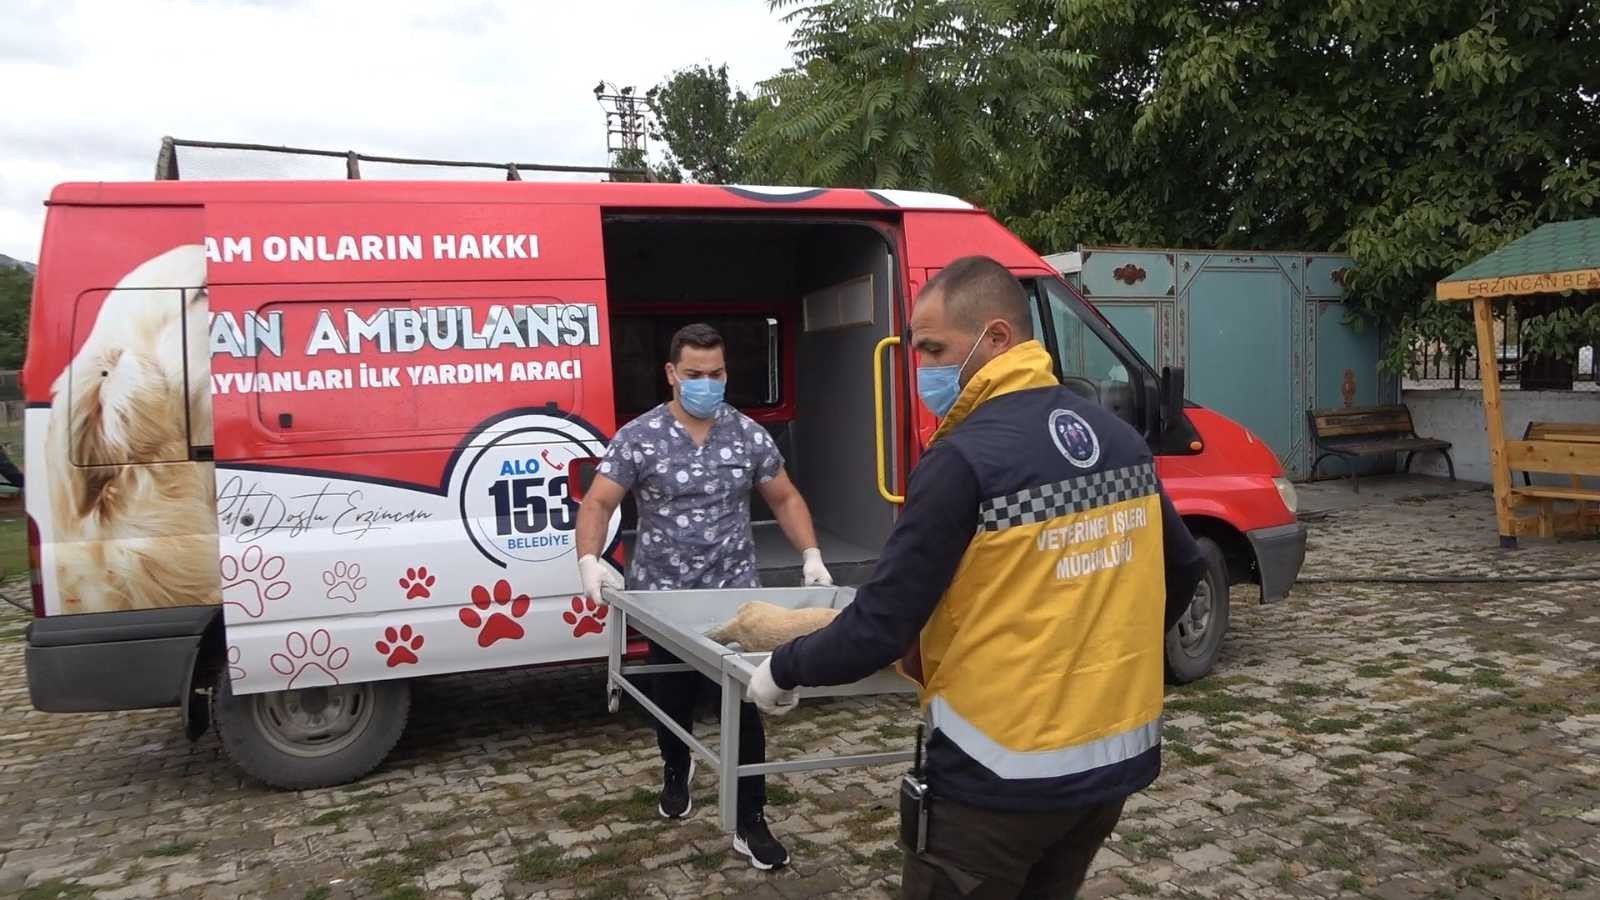 Erzincan’da ’hayvan ambulansı’ hizmete girdi #erzincan